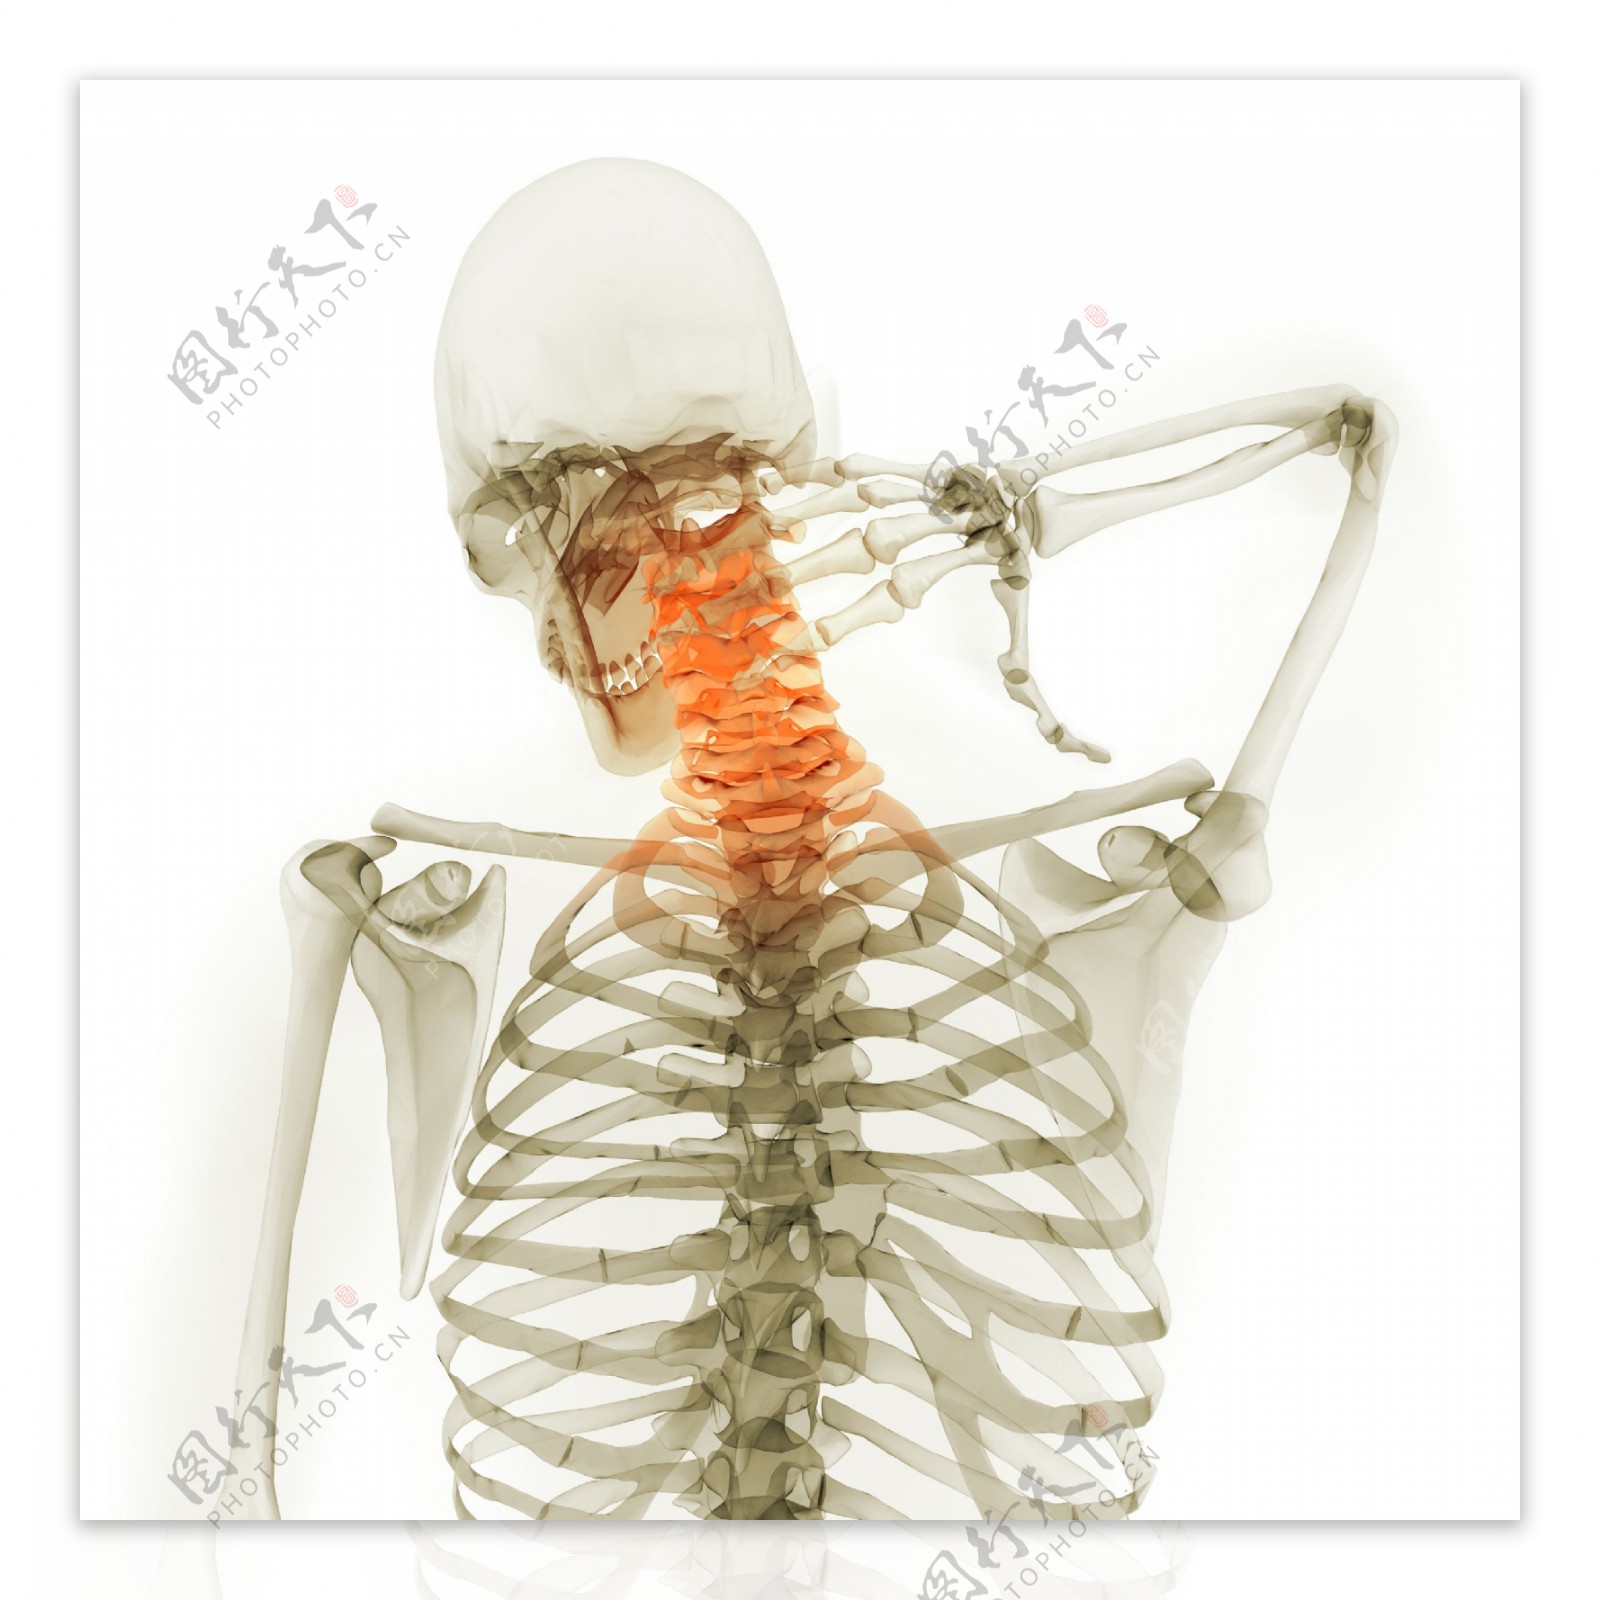 人体脊椎X光图像图片